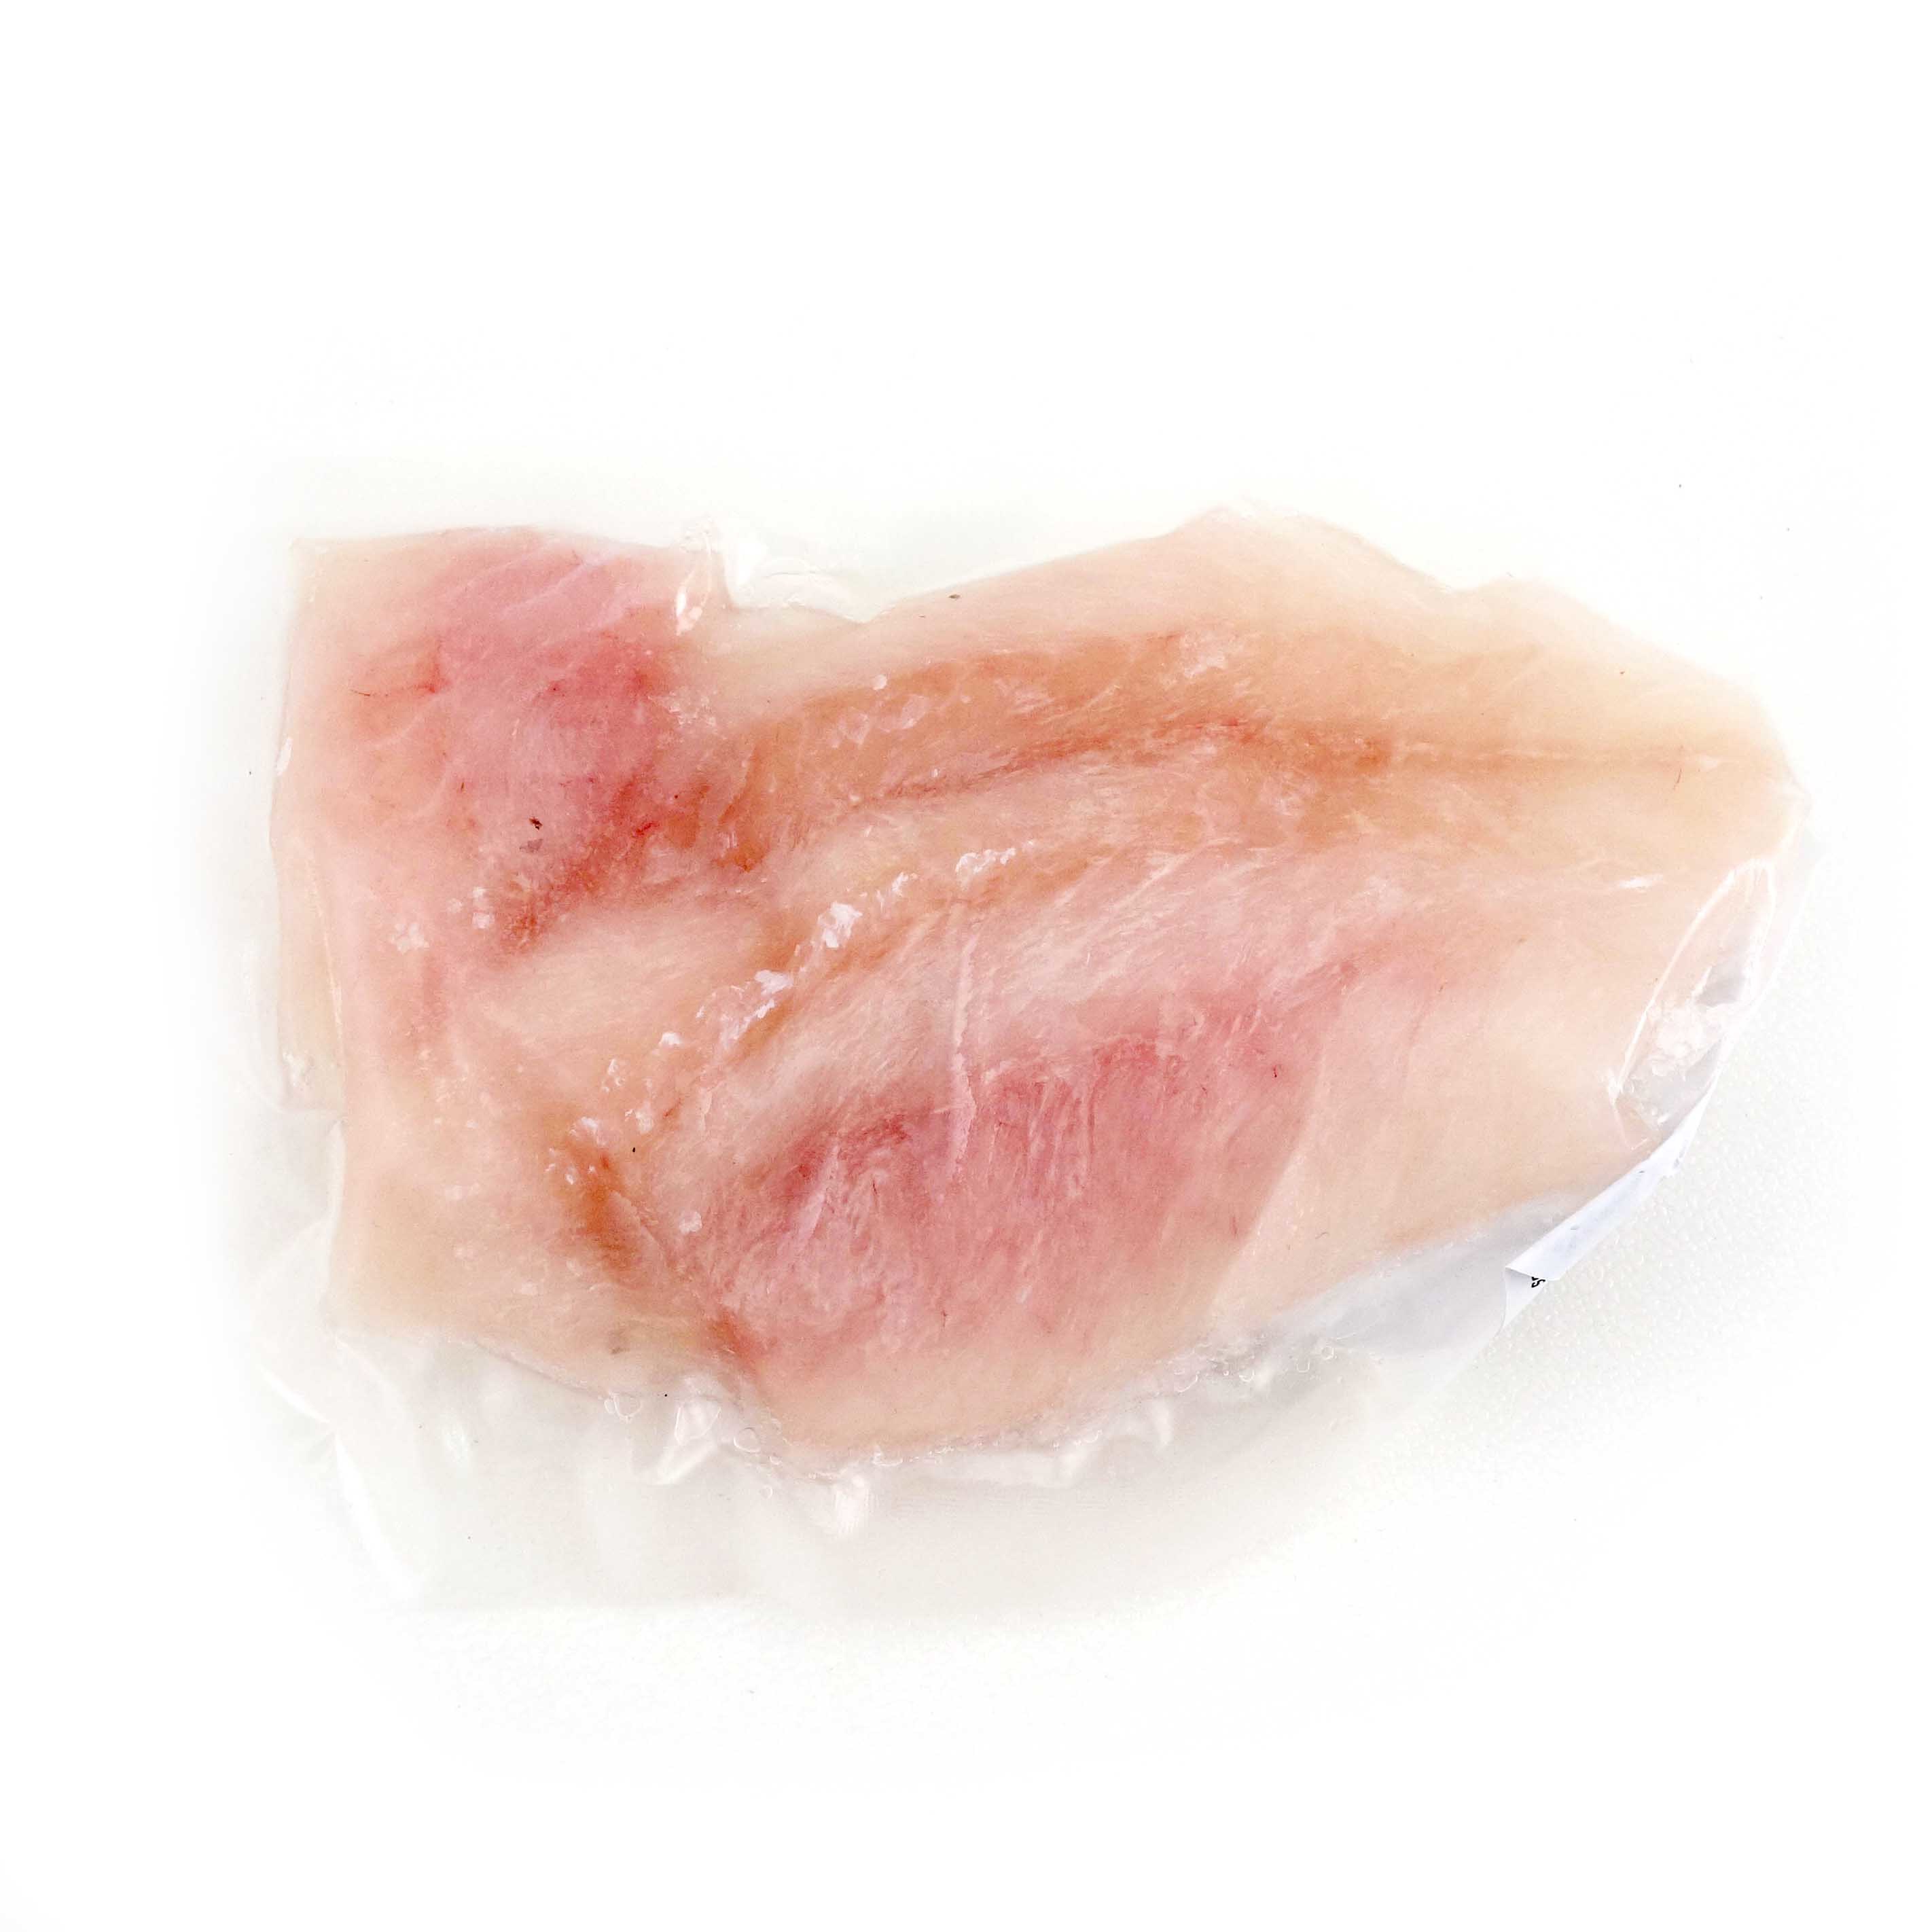 急凍紐西蘭野生鱈魚(Blue Cod) - 100克嬰兒包裝*